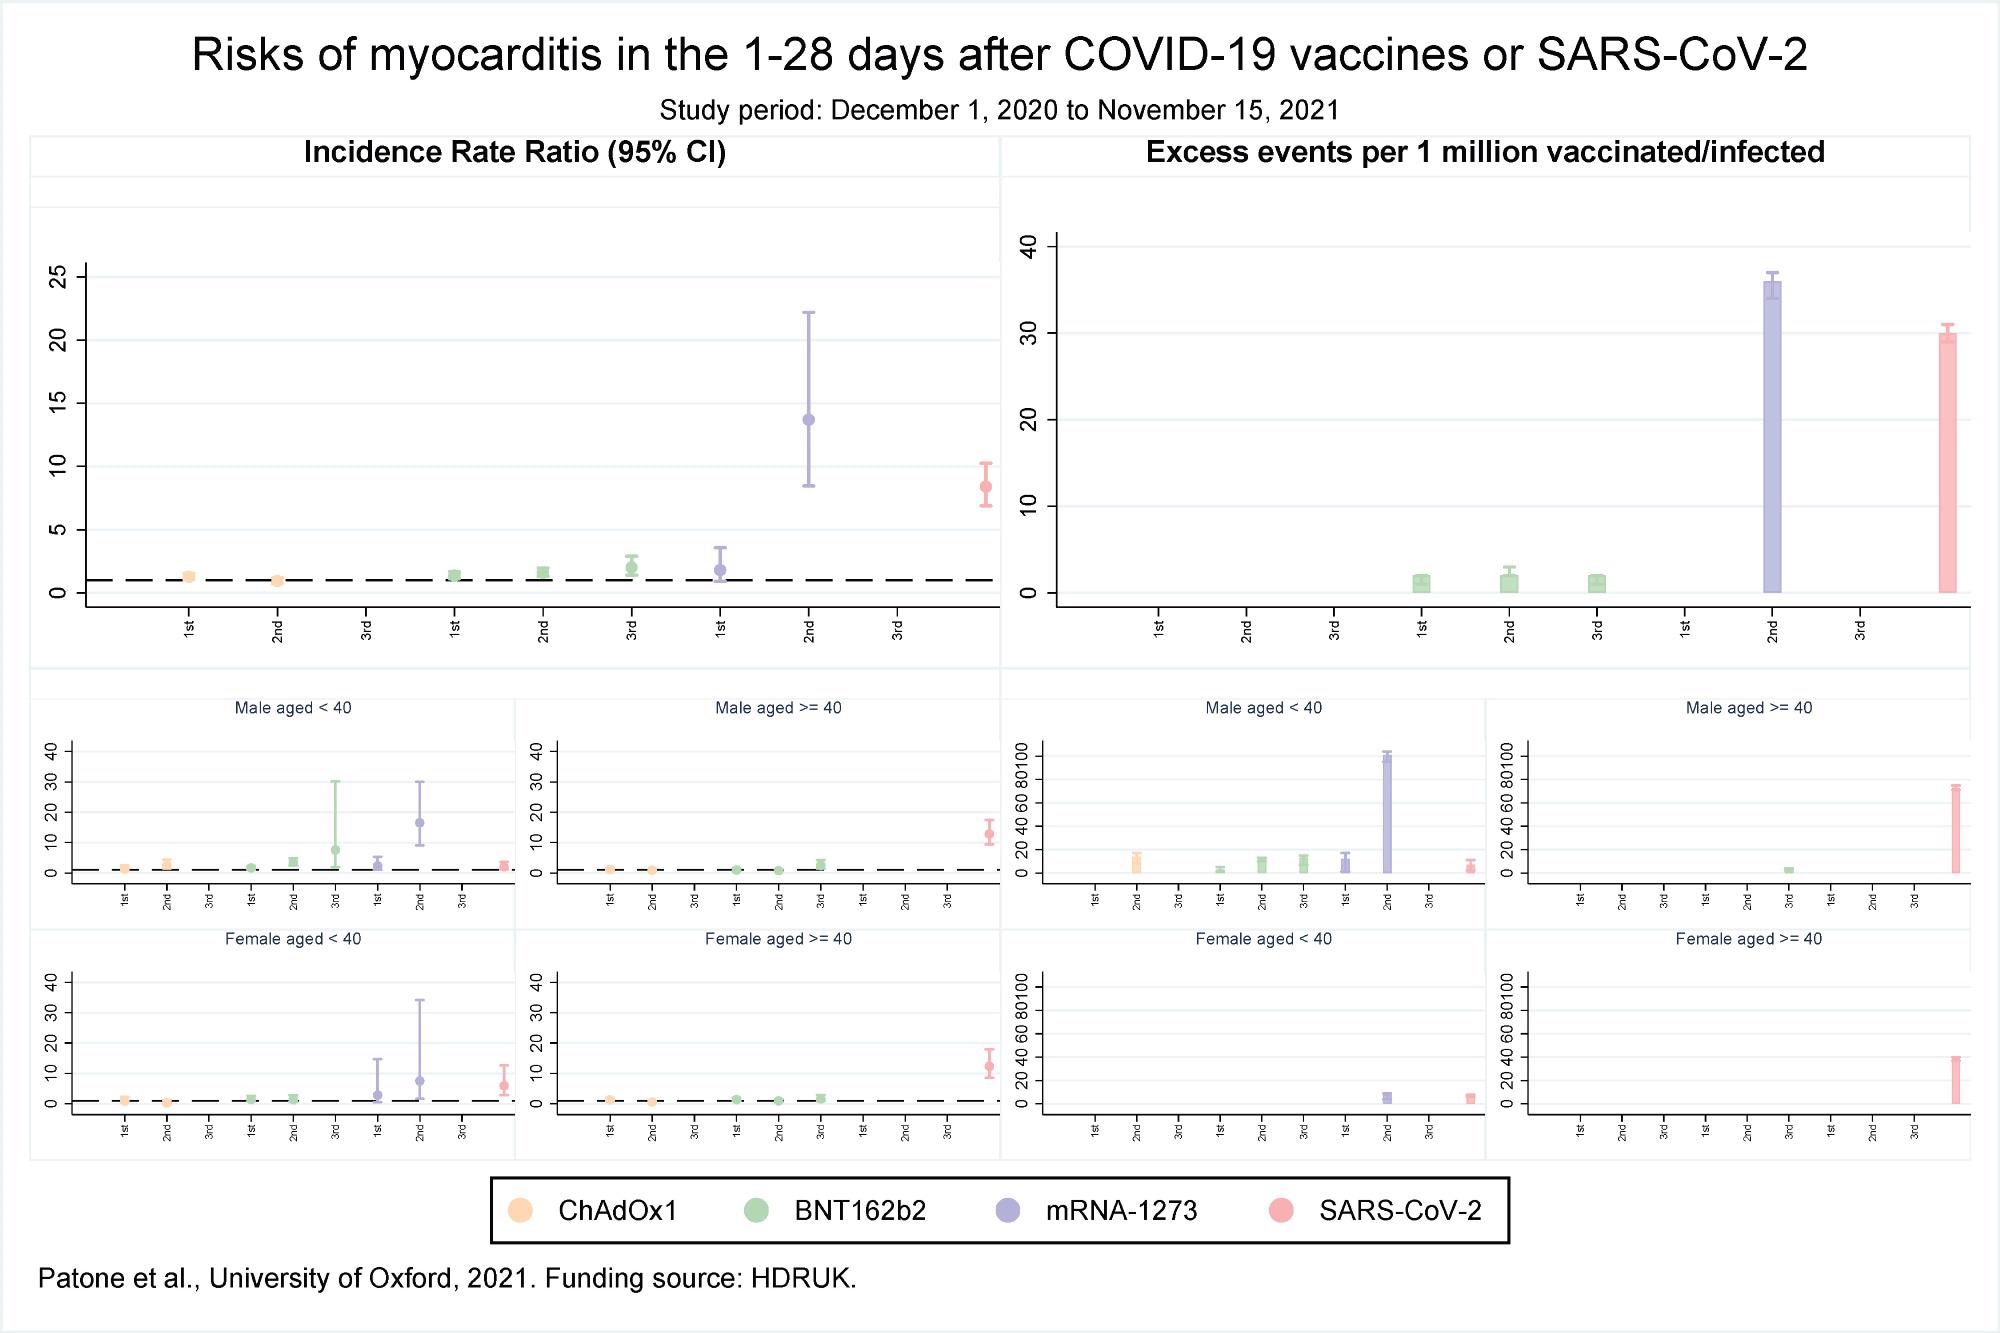 Riesgos de miocarditis en los 1-28 días posteriores a las vacunas COVID-19 o SARS-CoV-2